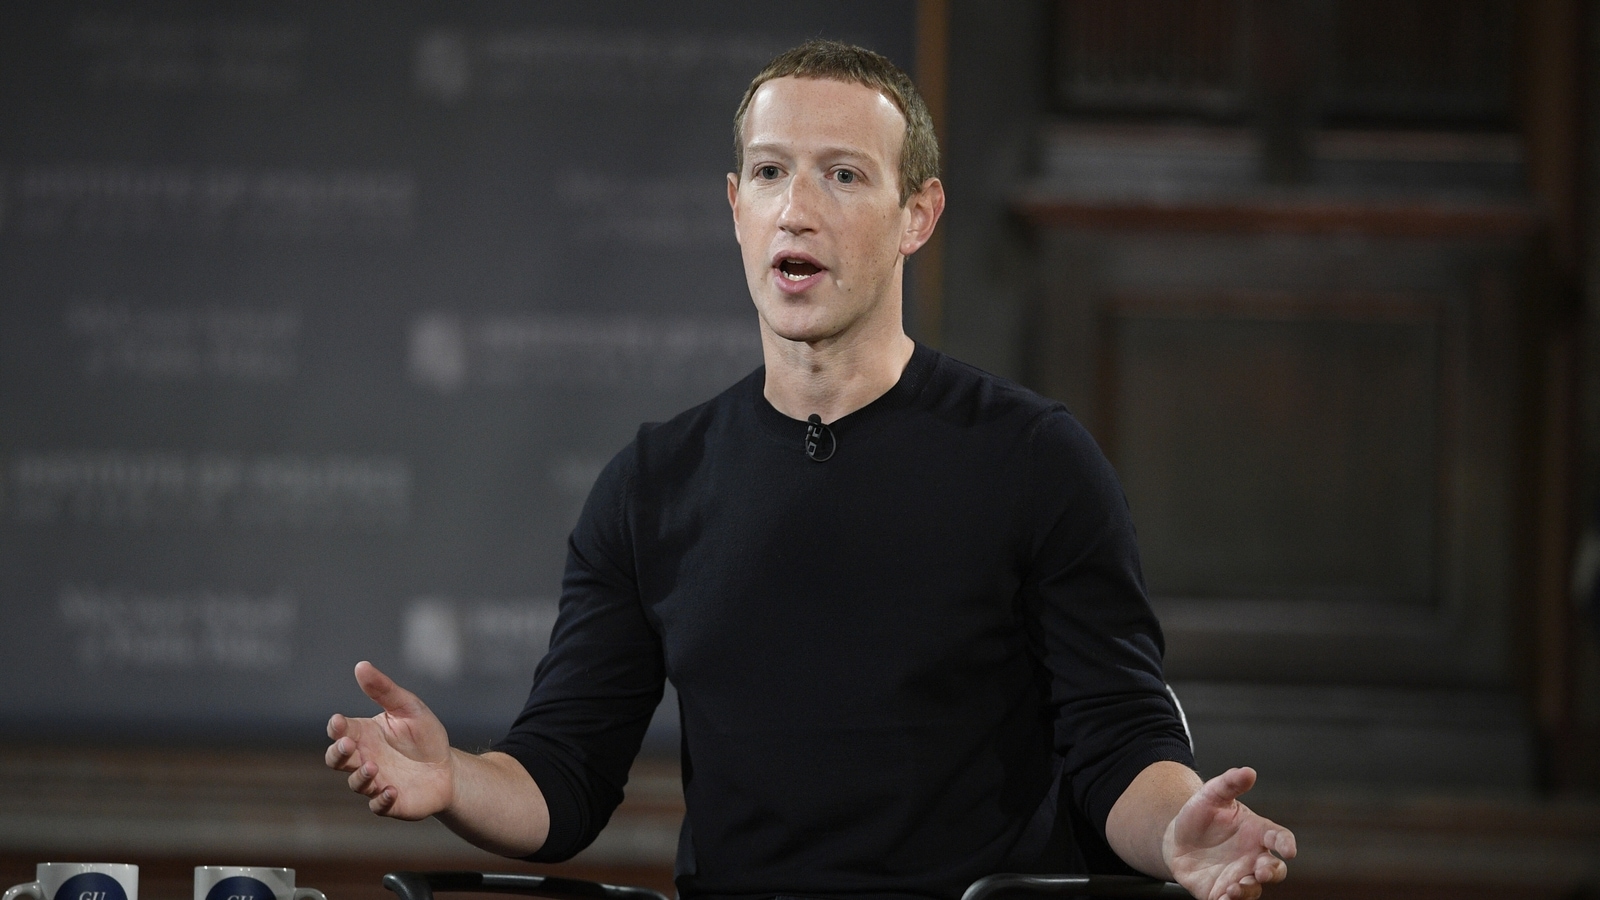 Meta's pandemic-era forecast was too rosy: Mark Zuckerberg